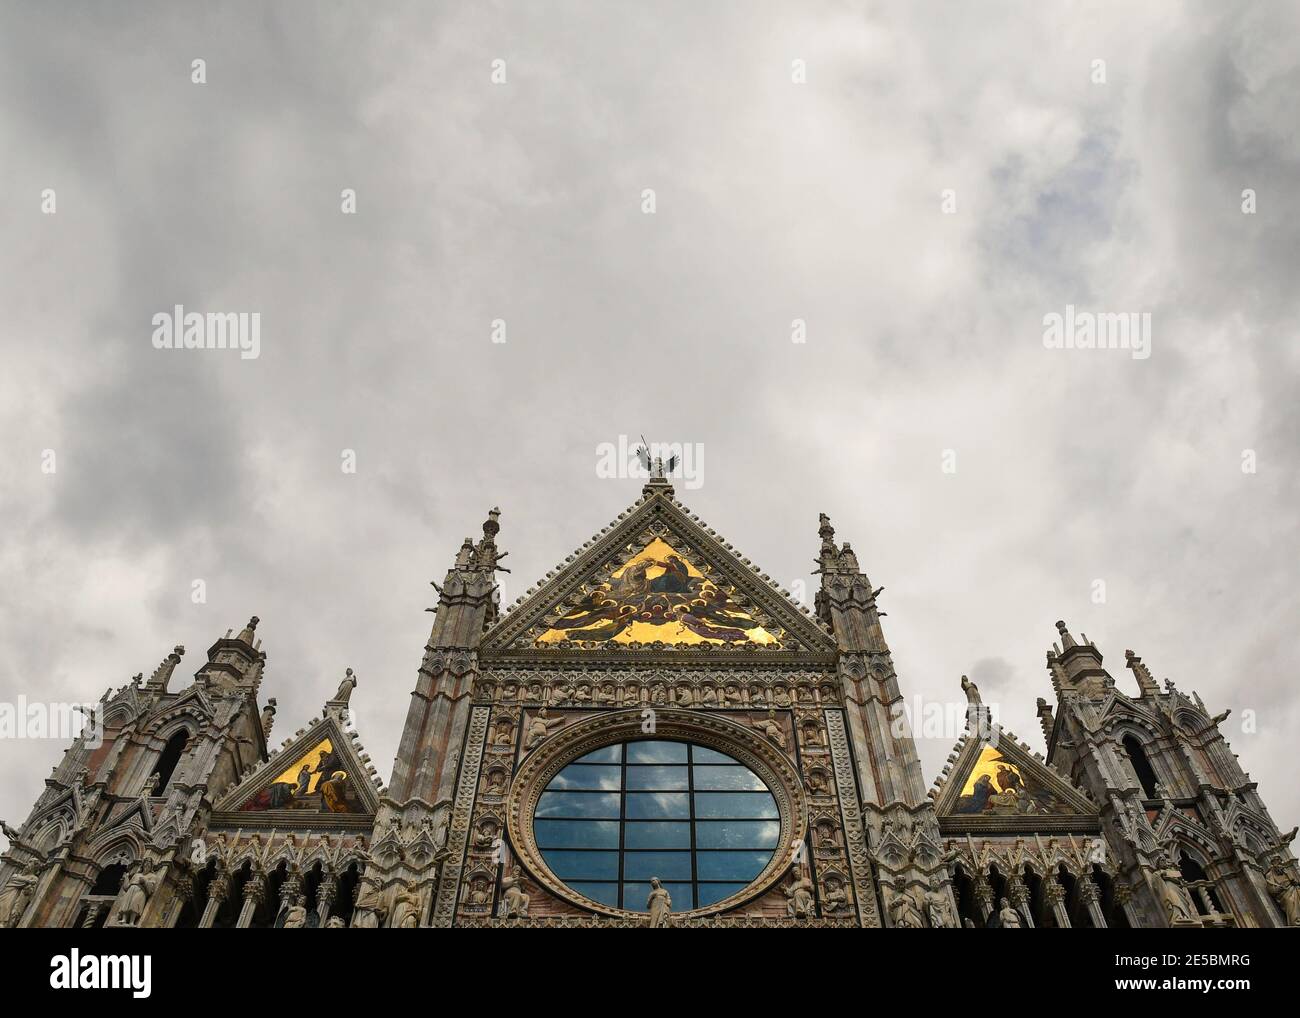 Façade supérieure de la cathédrale de Sienne (cathédrale métropolitaine de Sainte Marie de l'Assomption) contre un ciel couvert, Toscane, Italie Banque D'Images